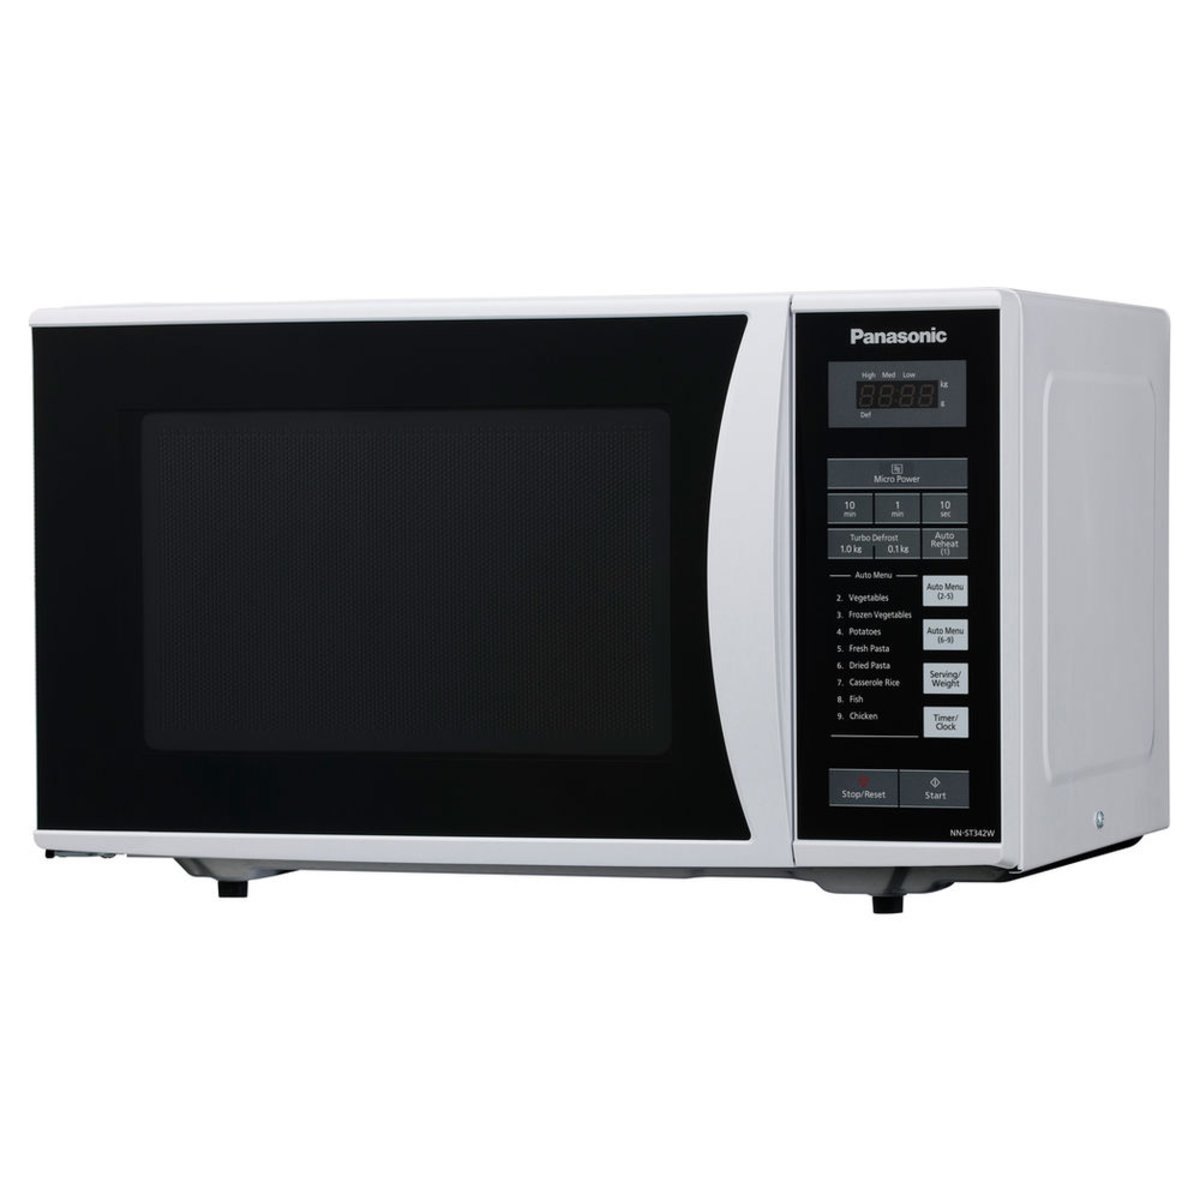 Panasonic Microwave Oven NNST342WK 25 Ltr